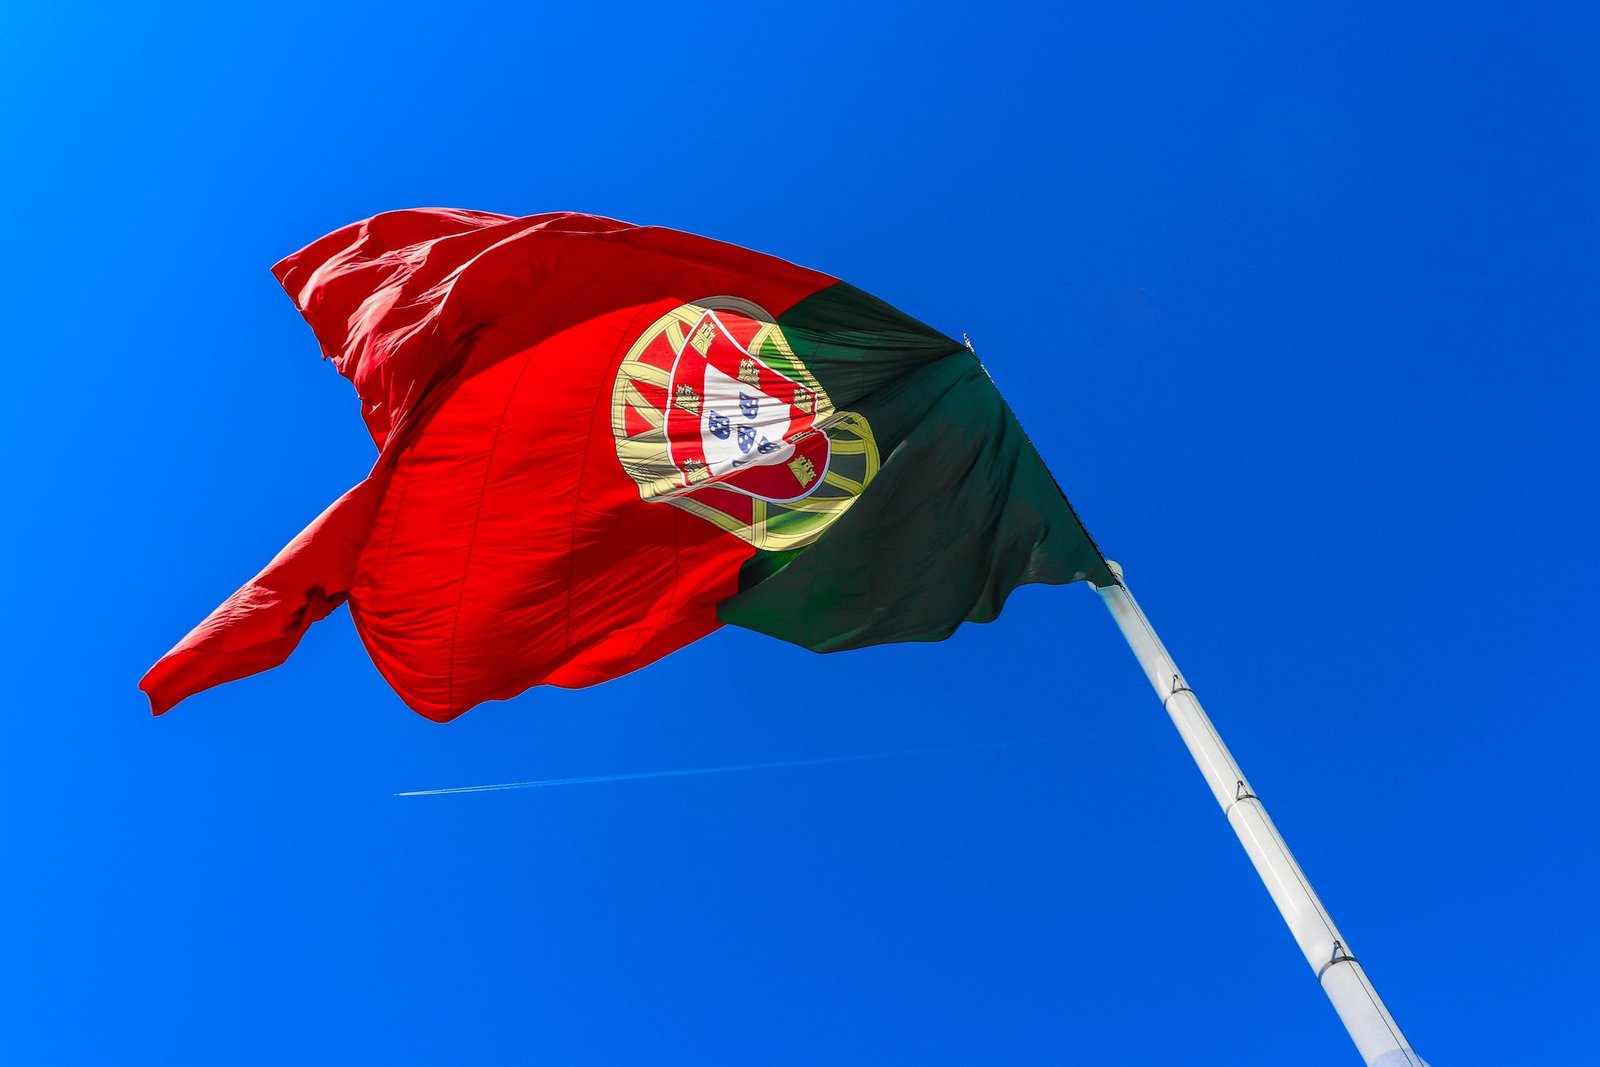 Quanto custa viajar para portugal?